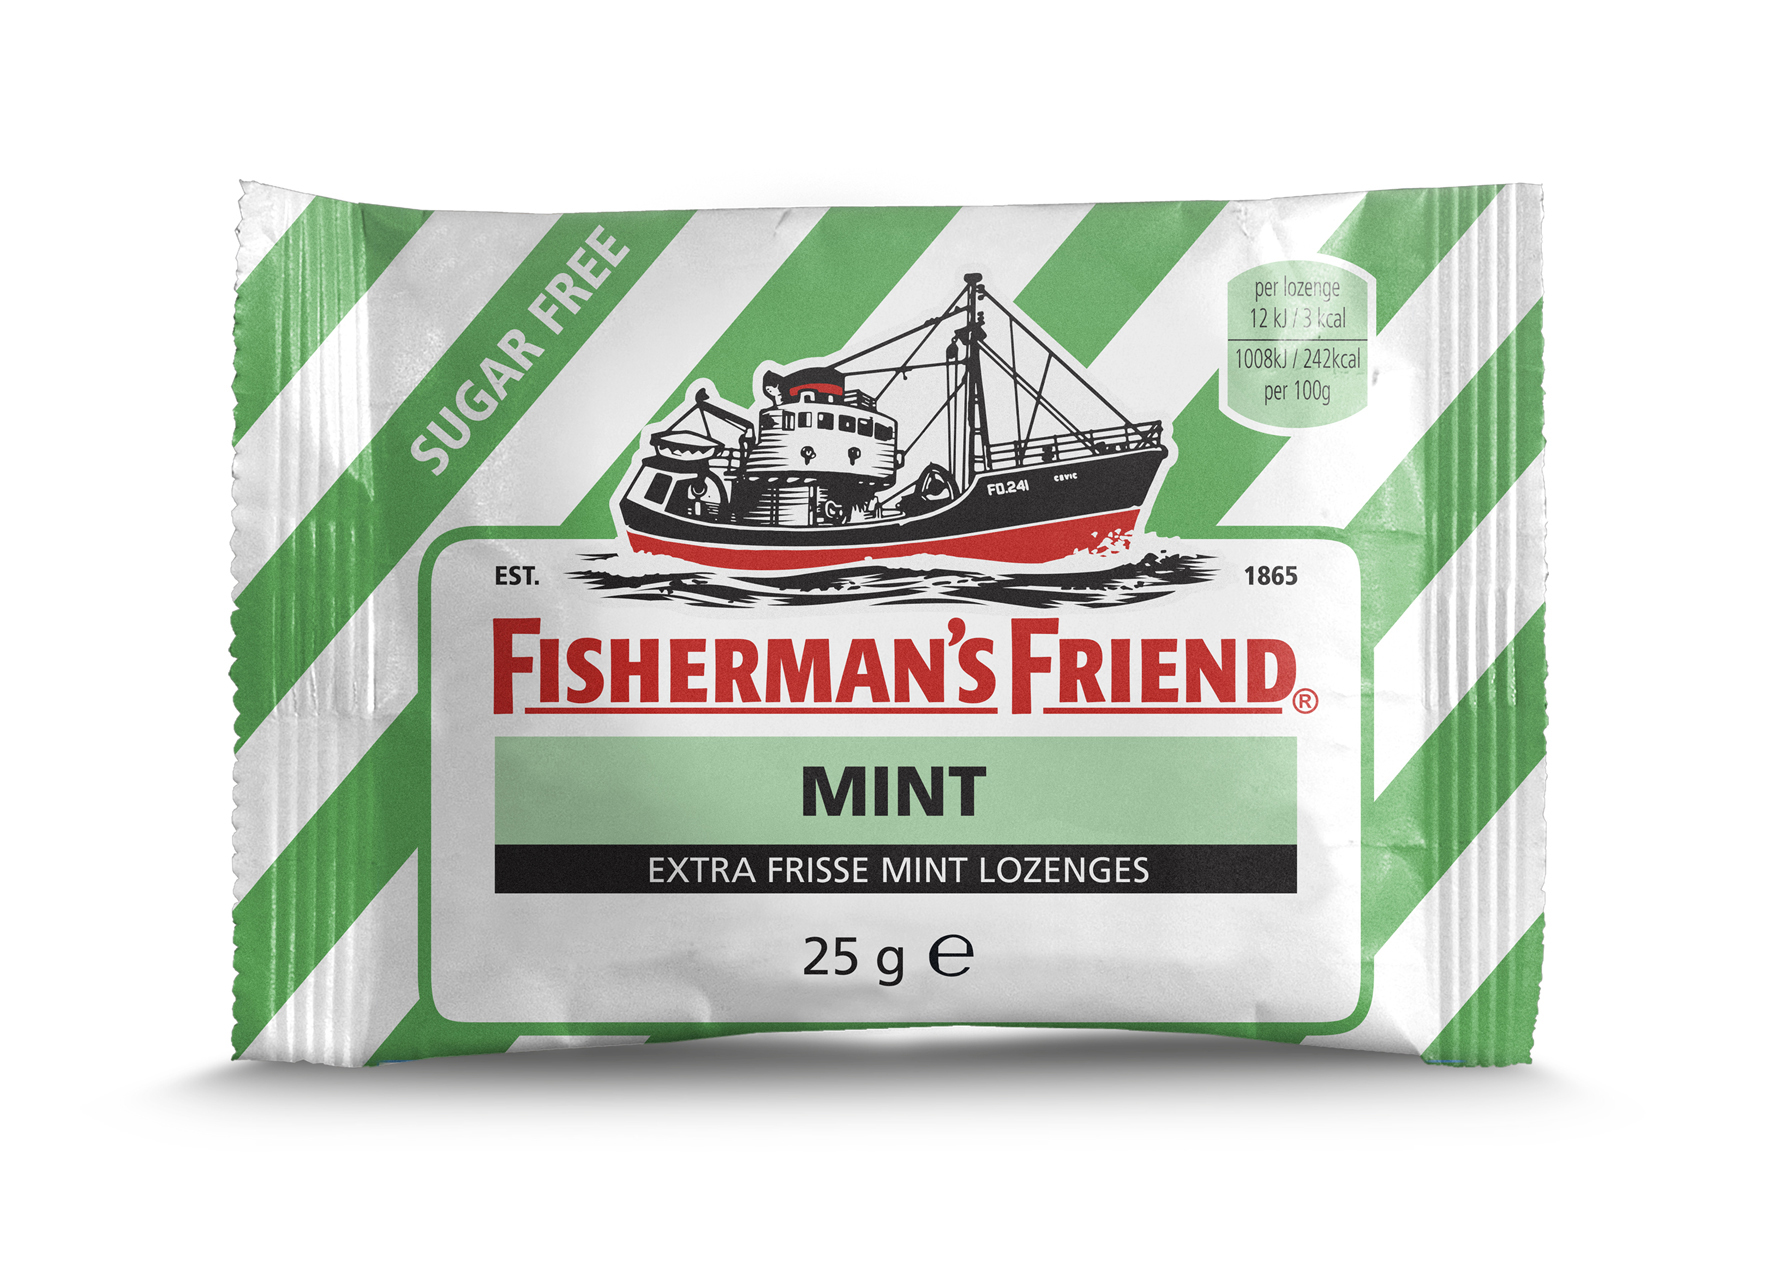 13877 Fisherman's friend mint sugarfree 0,90 1x24 zak